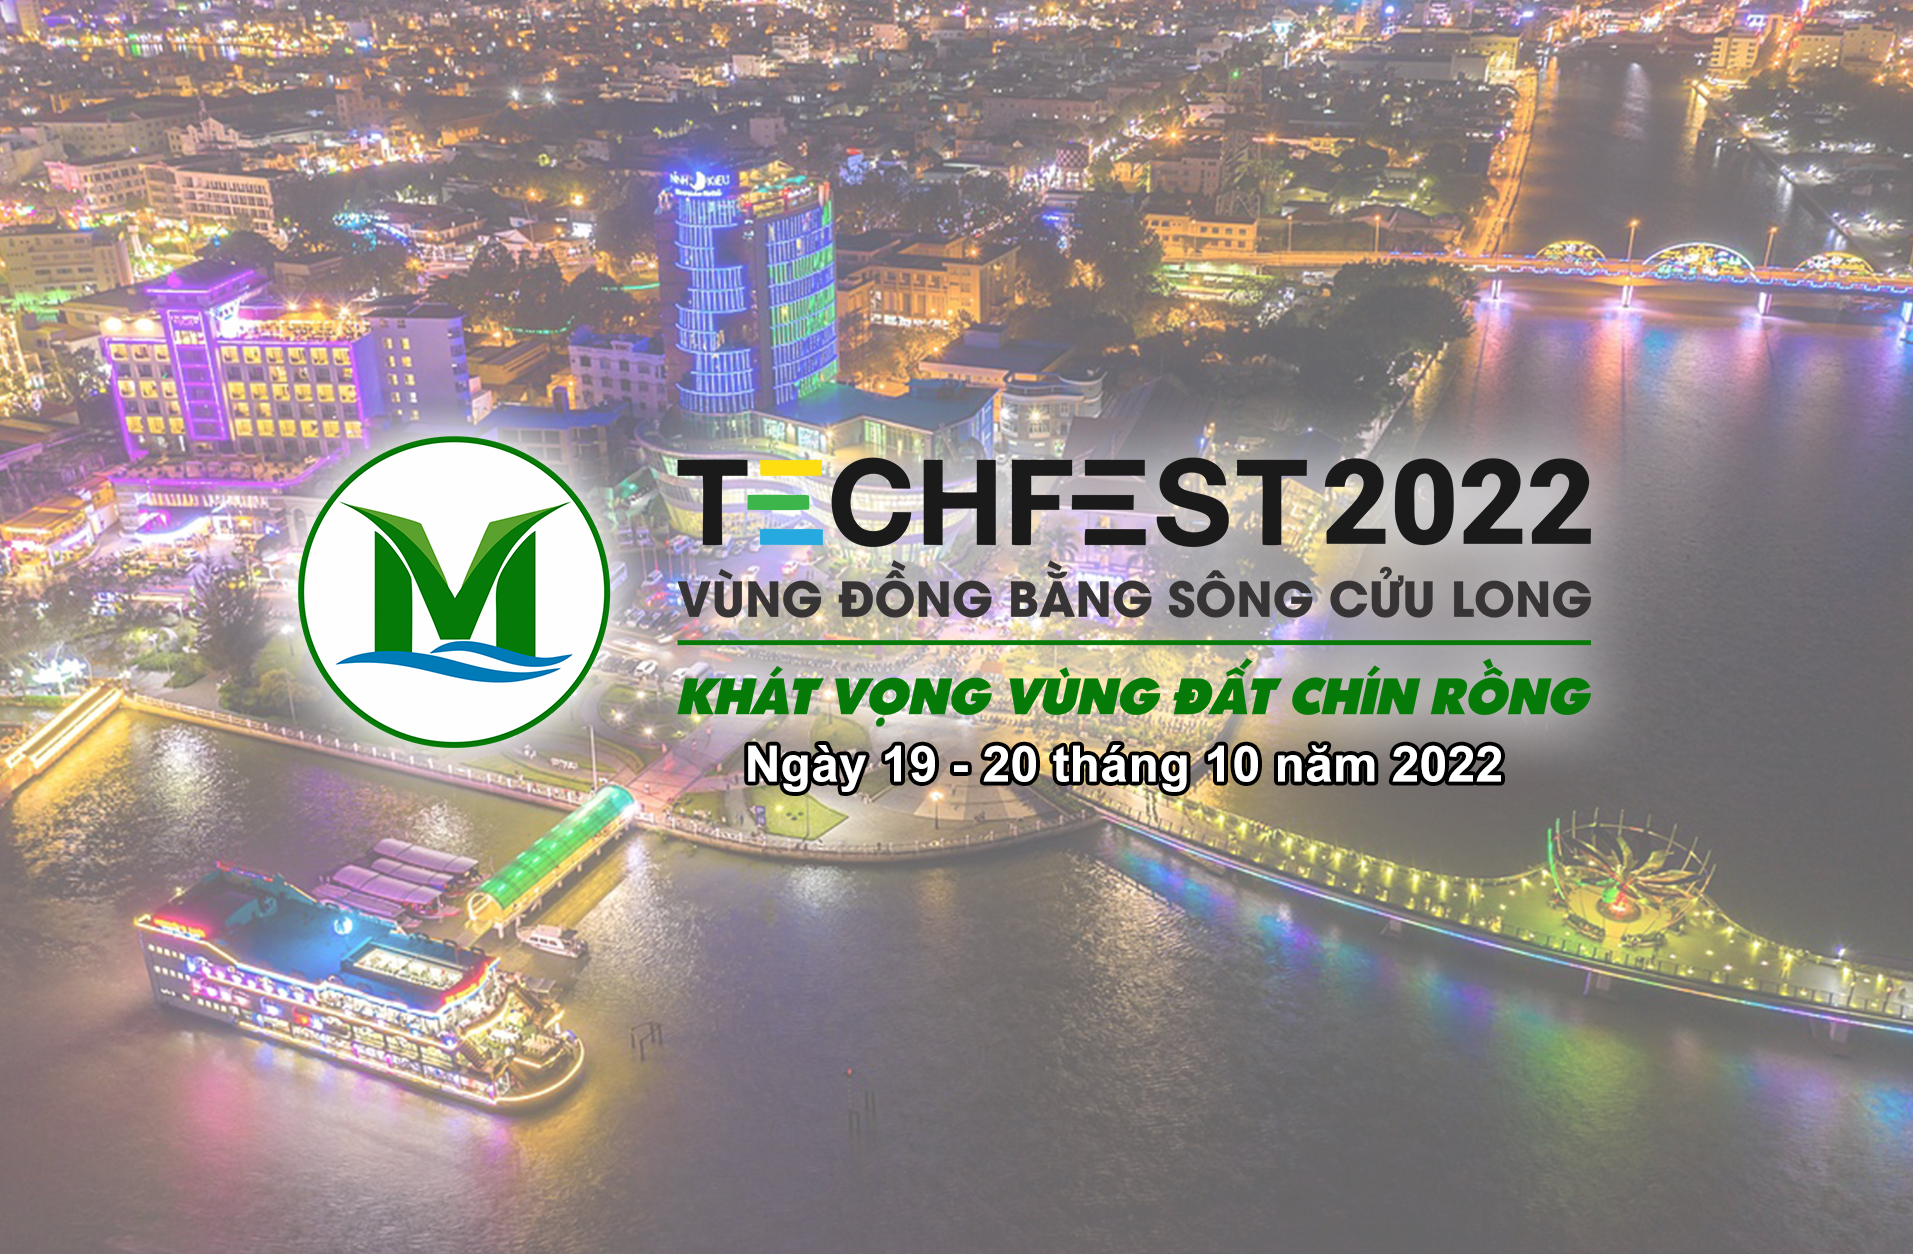 Thông tin phục vụ đại biểu tham gia sự kiện ngày hội khởi nghiệp đổi mới sáng tạo vùng đồng bằng sông Cửu Long (Techfest Mekong 2022)